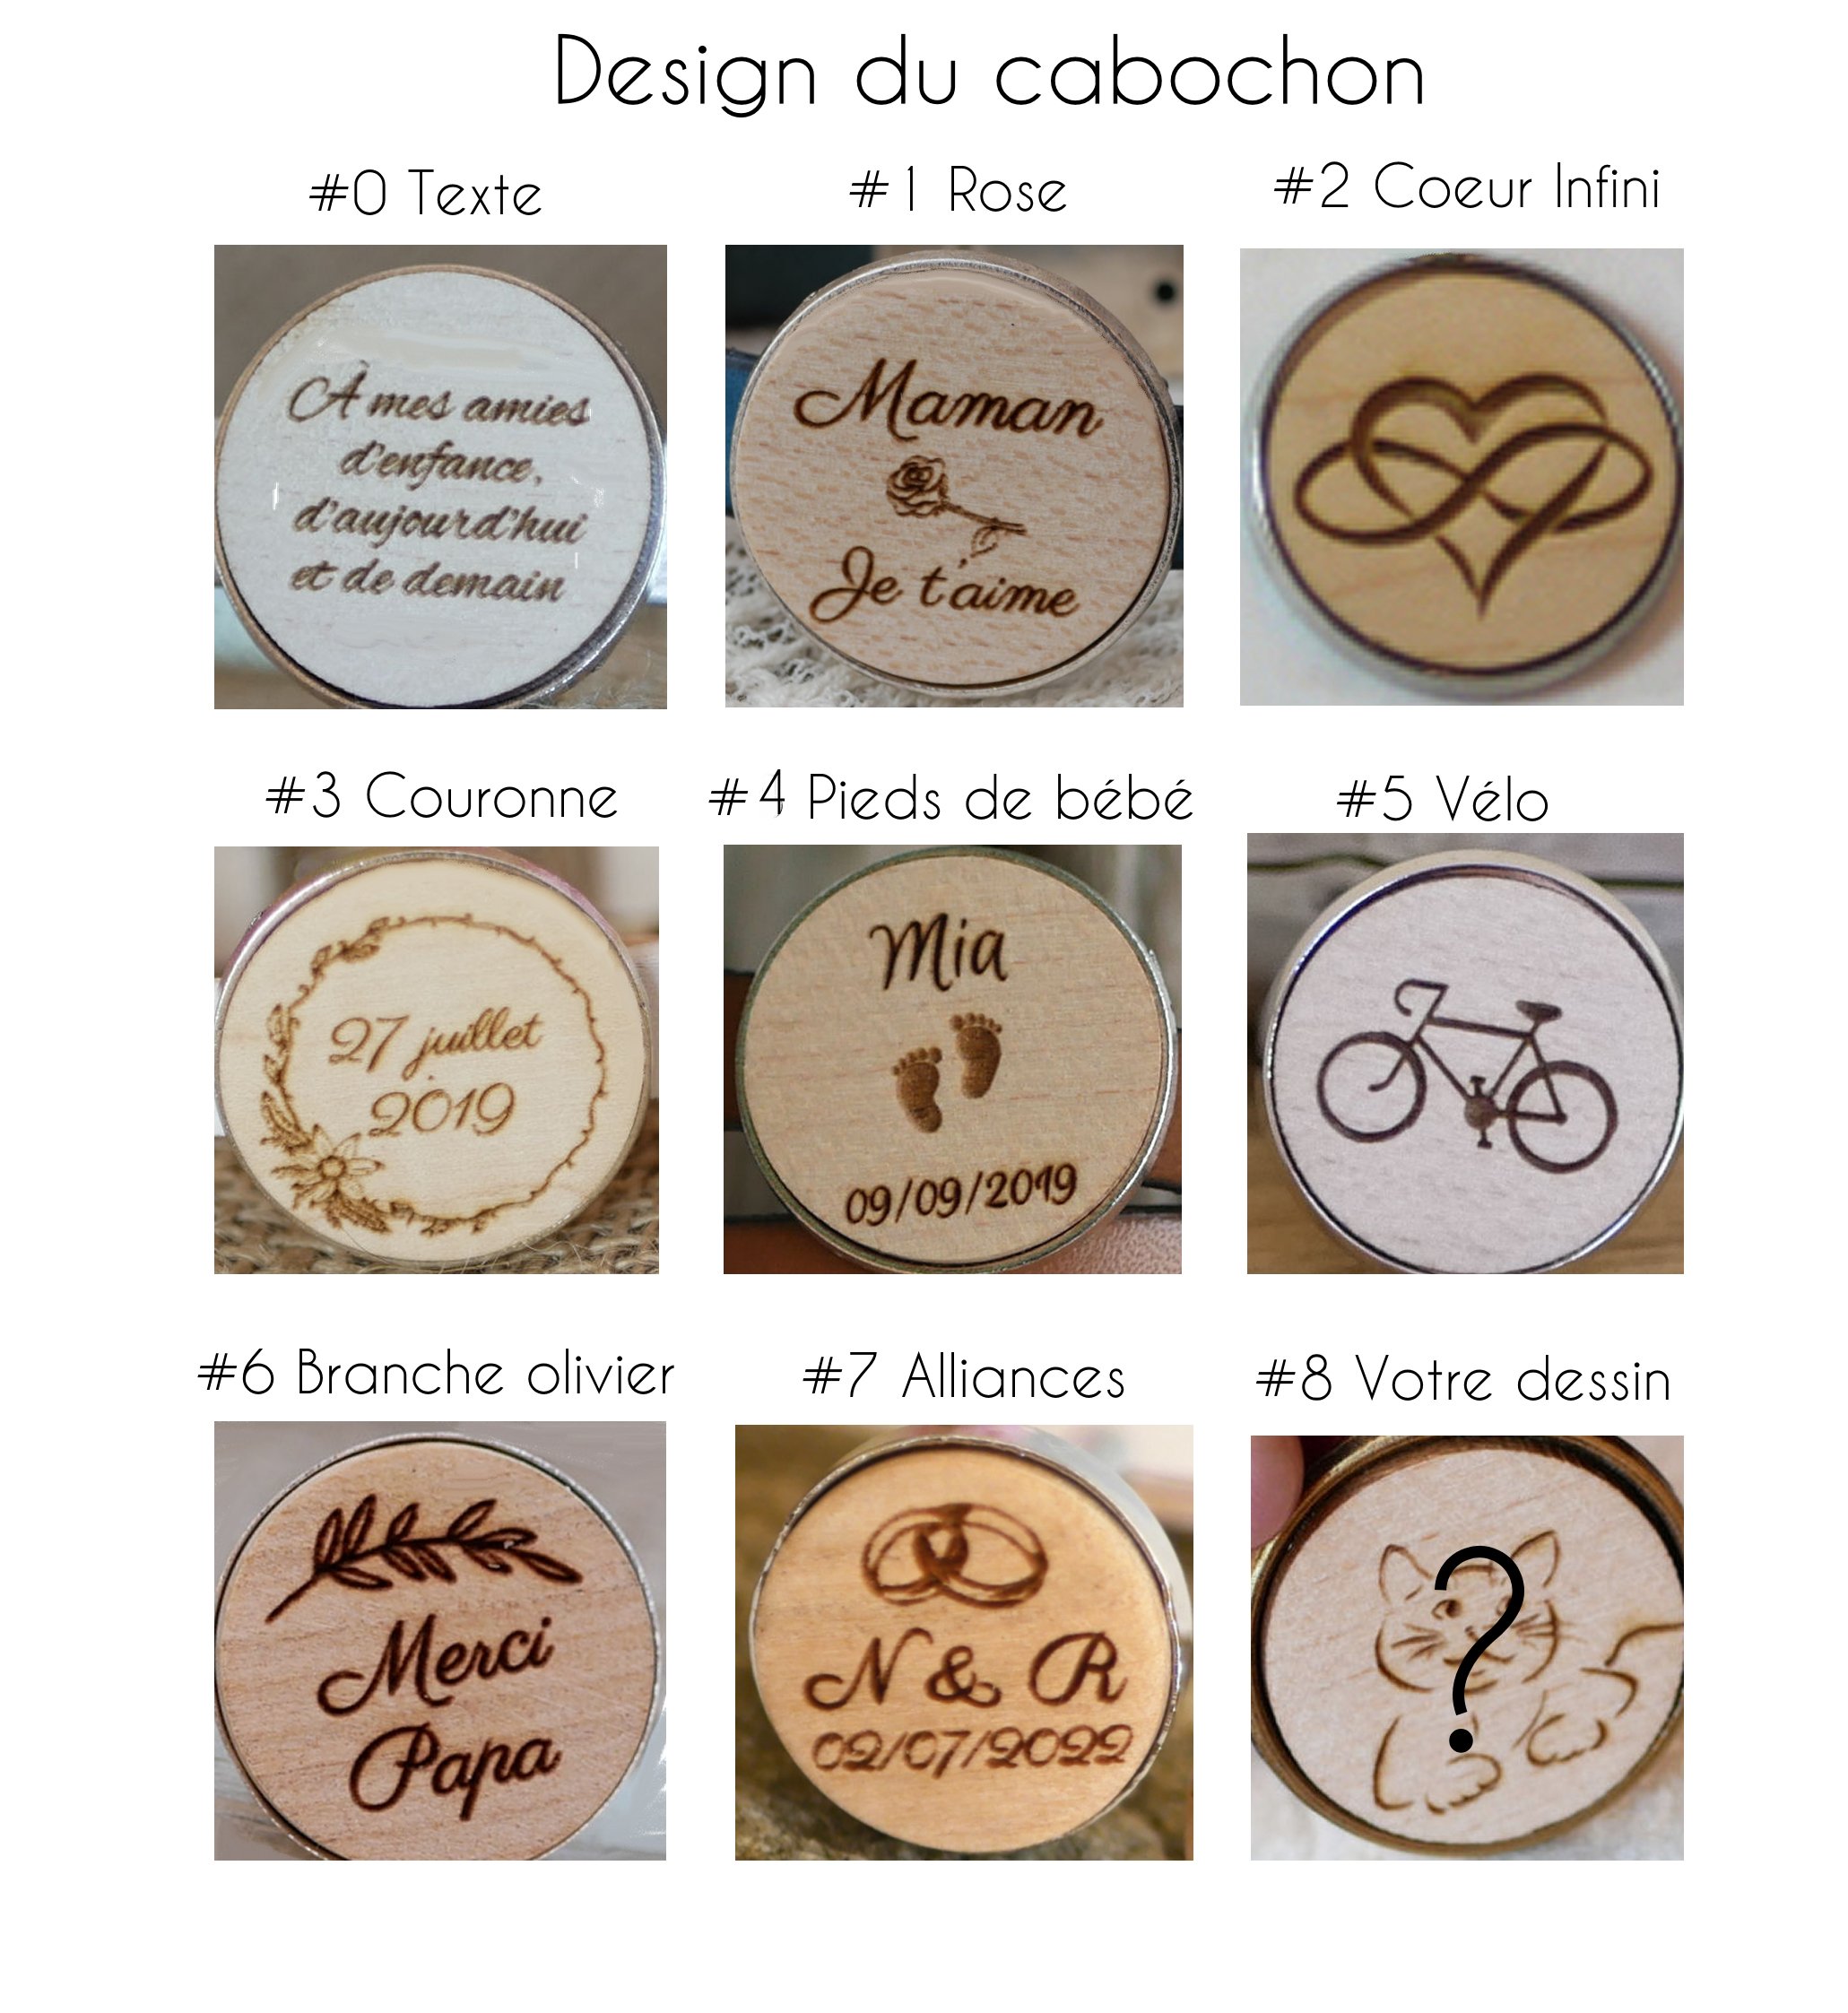 Lederhalskette mit Cabochon-Anhänger aus Holz graviert zu personalisieren